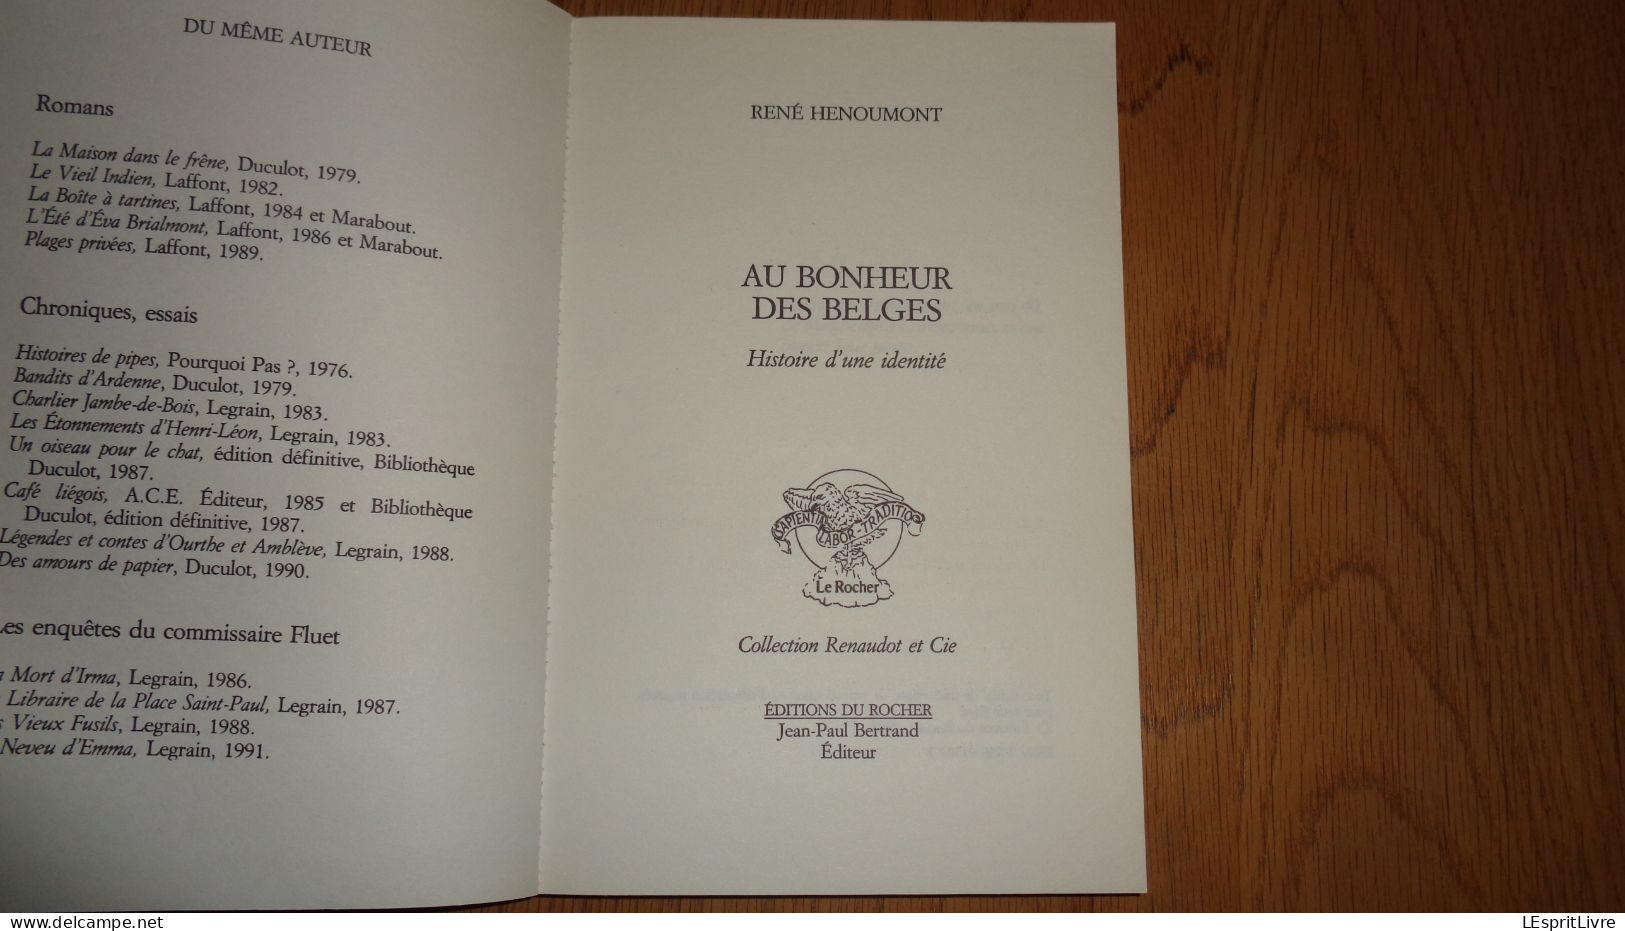 AU BONHEUR DES BELGES René Henoumont Ecrivain Belgique Auteur Belge Histoire Récit Exode France 1940 Guerre 40 45 - Autores Belgas